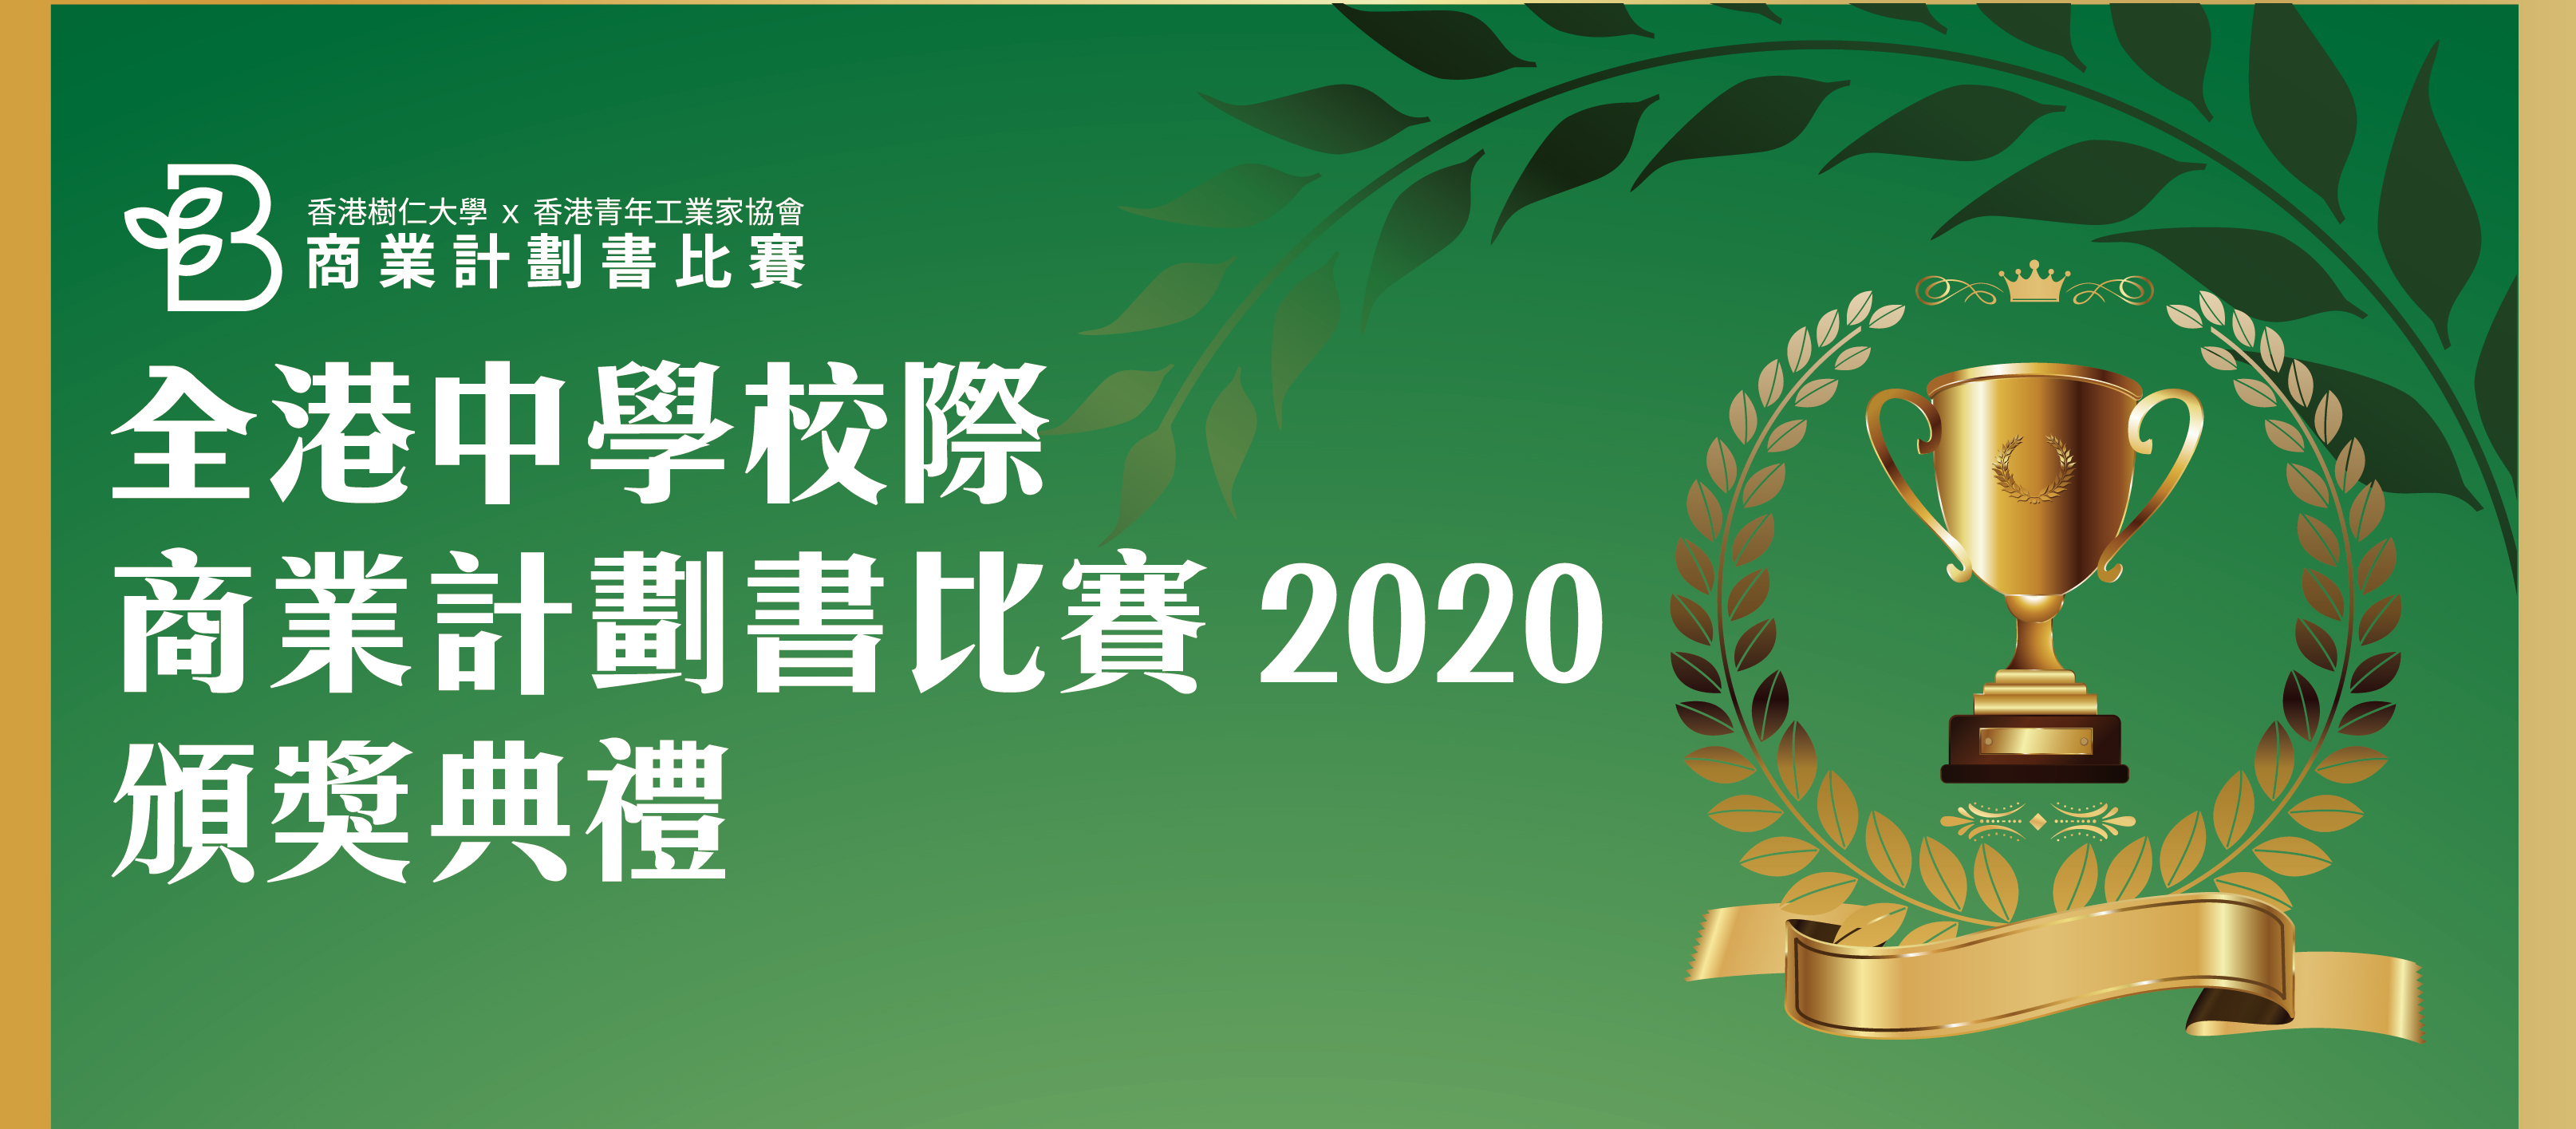 SYU x YICY 全港中学校际商业计划书比赛2020 颁奖礼完满结束